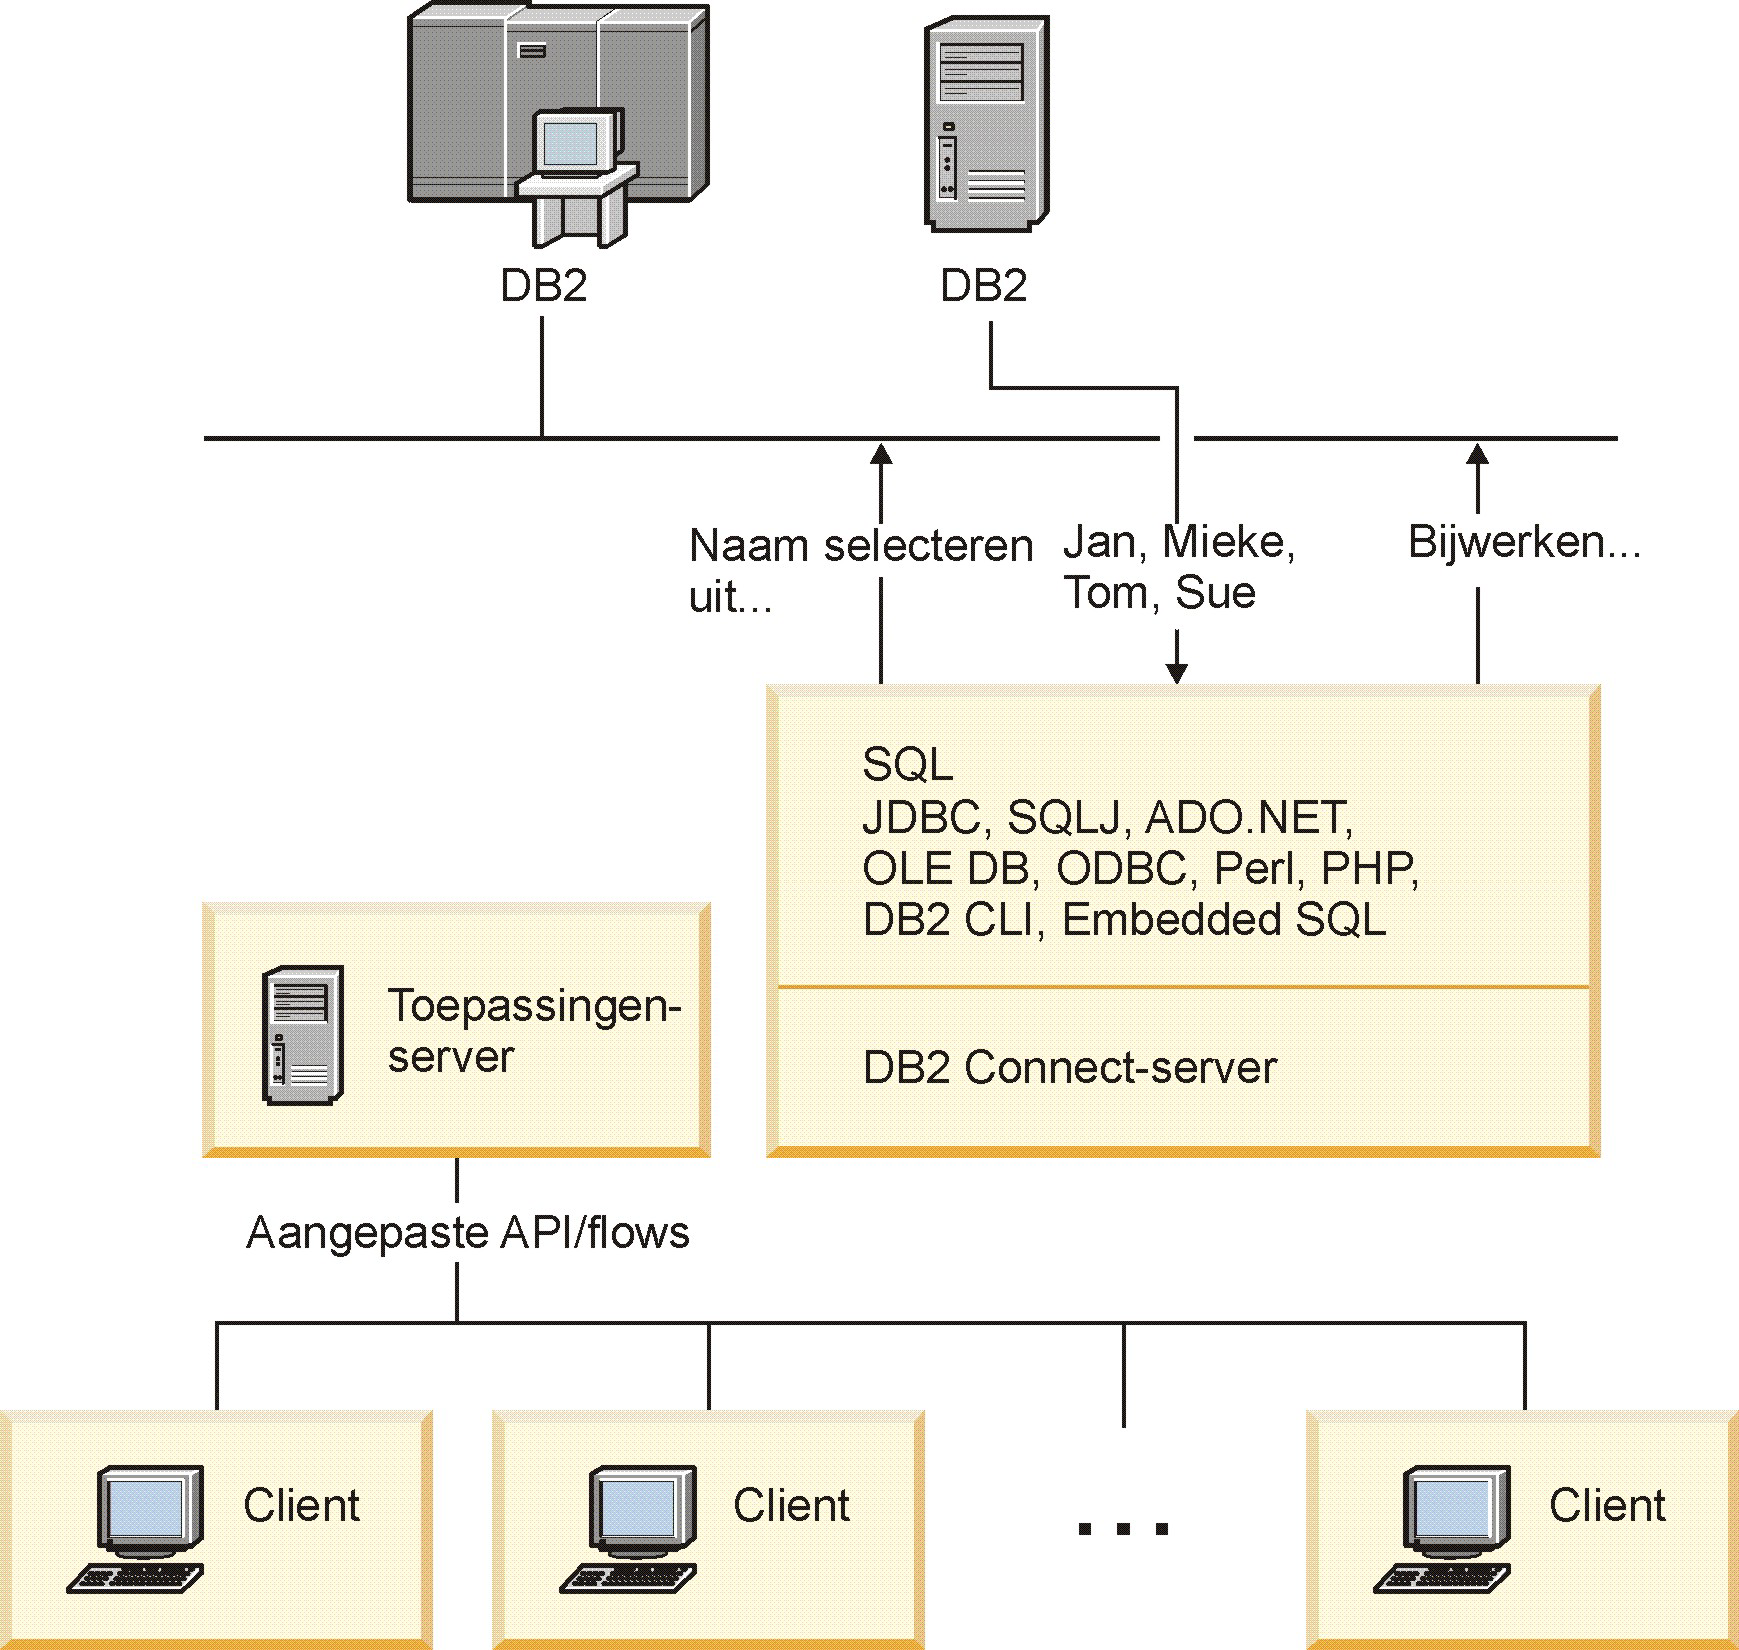 Perl, PHP en OLE DB) of een volledige communicatie-infrastructuur voor de interactie met DB2-databaseservers kan worden ontwikkeld.